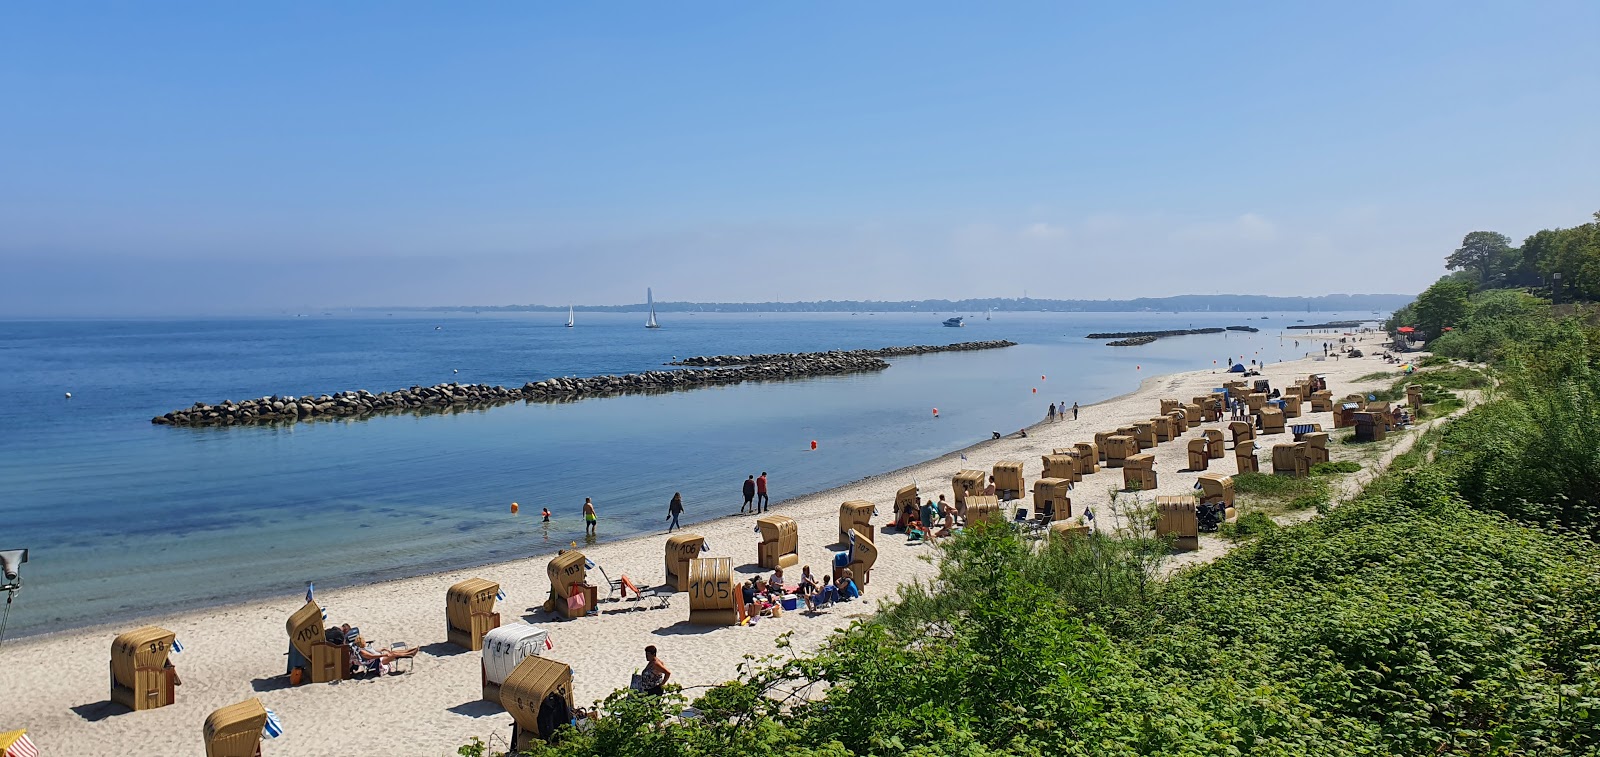 Photo de Schilksee Strandbad - endroit populaire parmi les connaisseurs de la détente